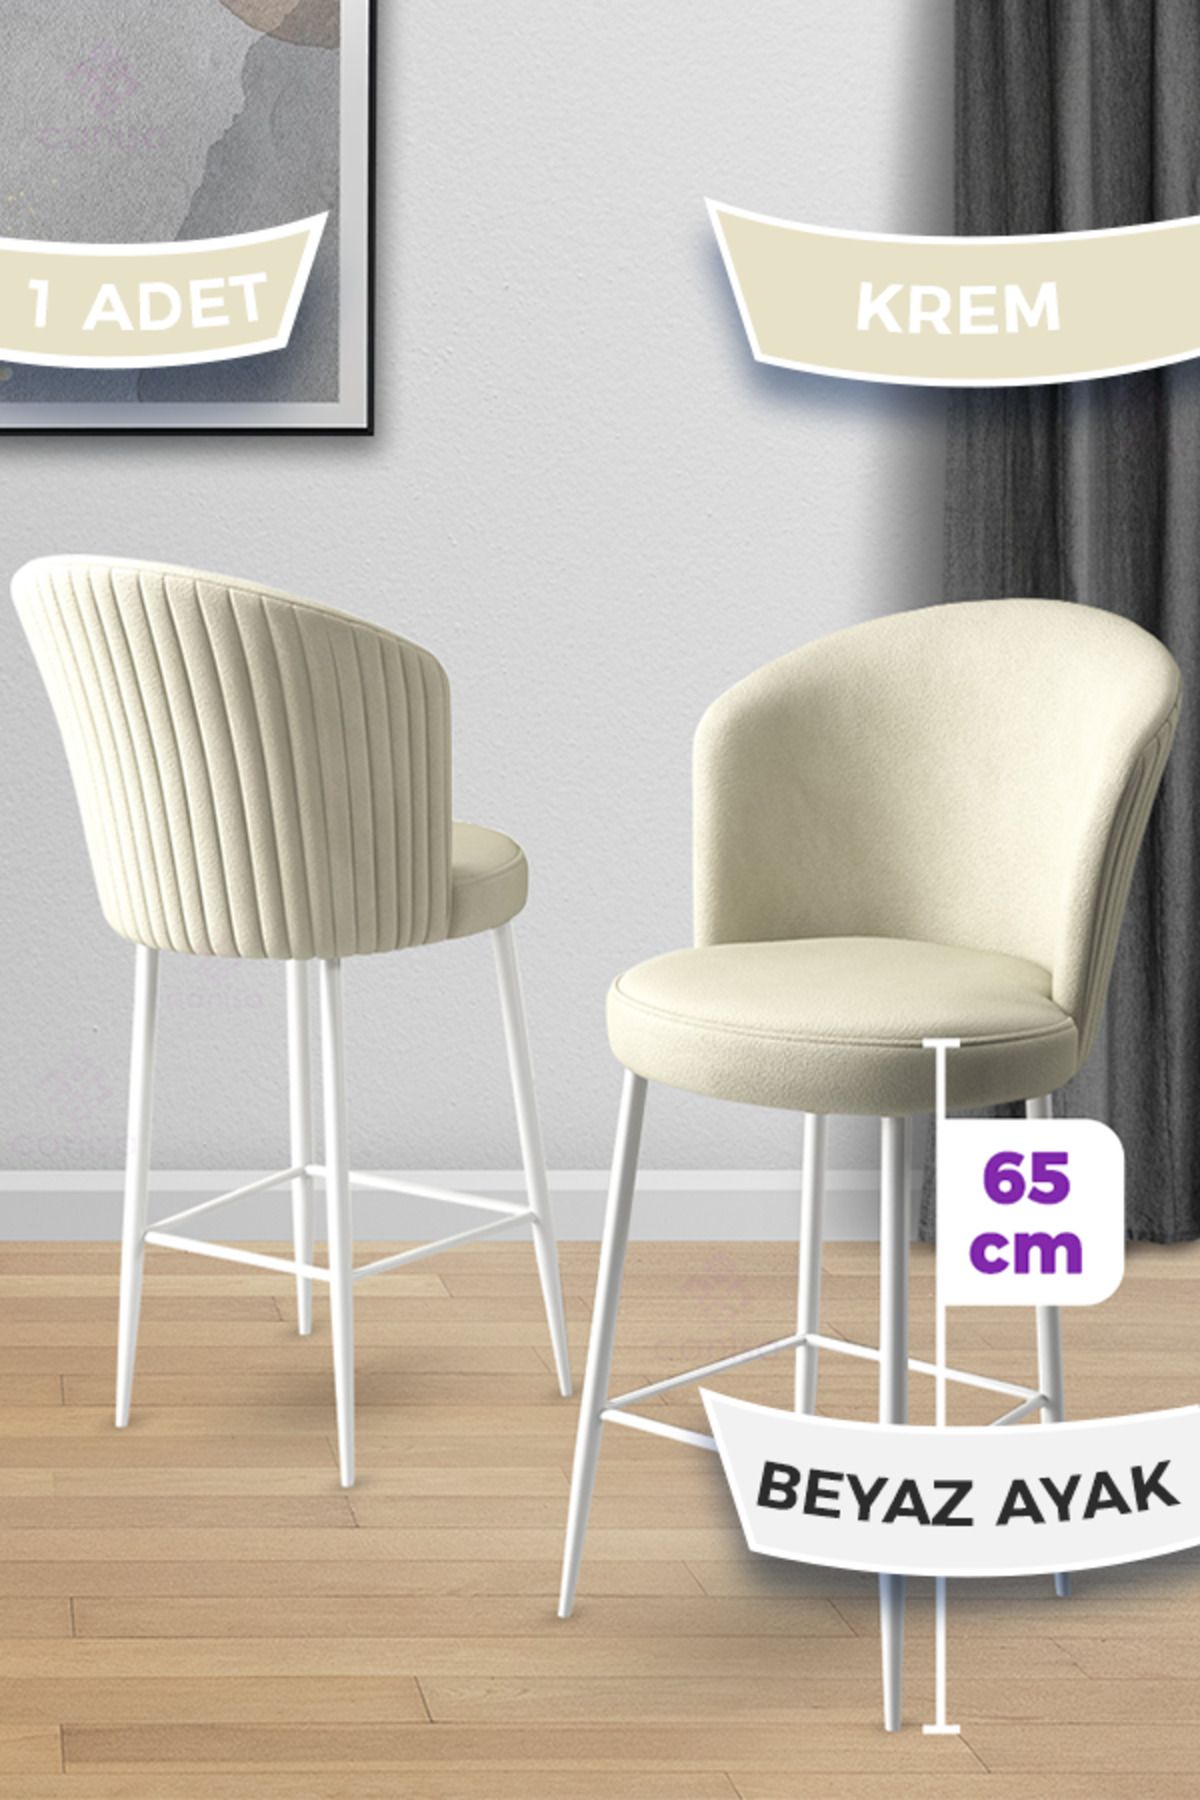 Canisa Concept Alte Serisi 1 Adet 65 Cm Krem Ada Mutfak Bar Sandalyesi Babyface Kumaş Beyaz Metal Ayaklı